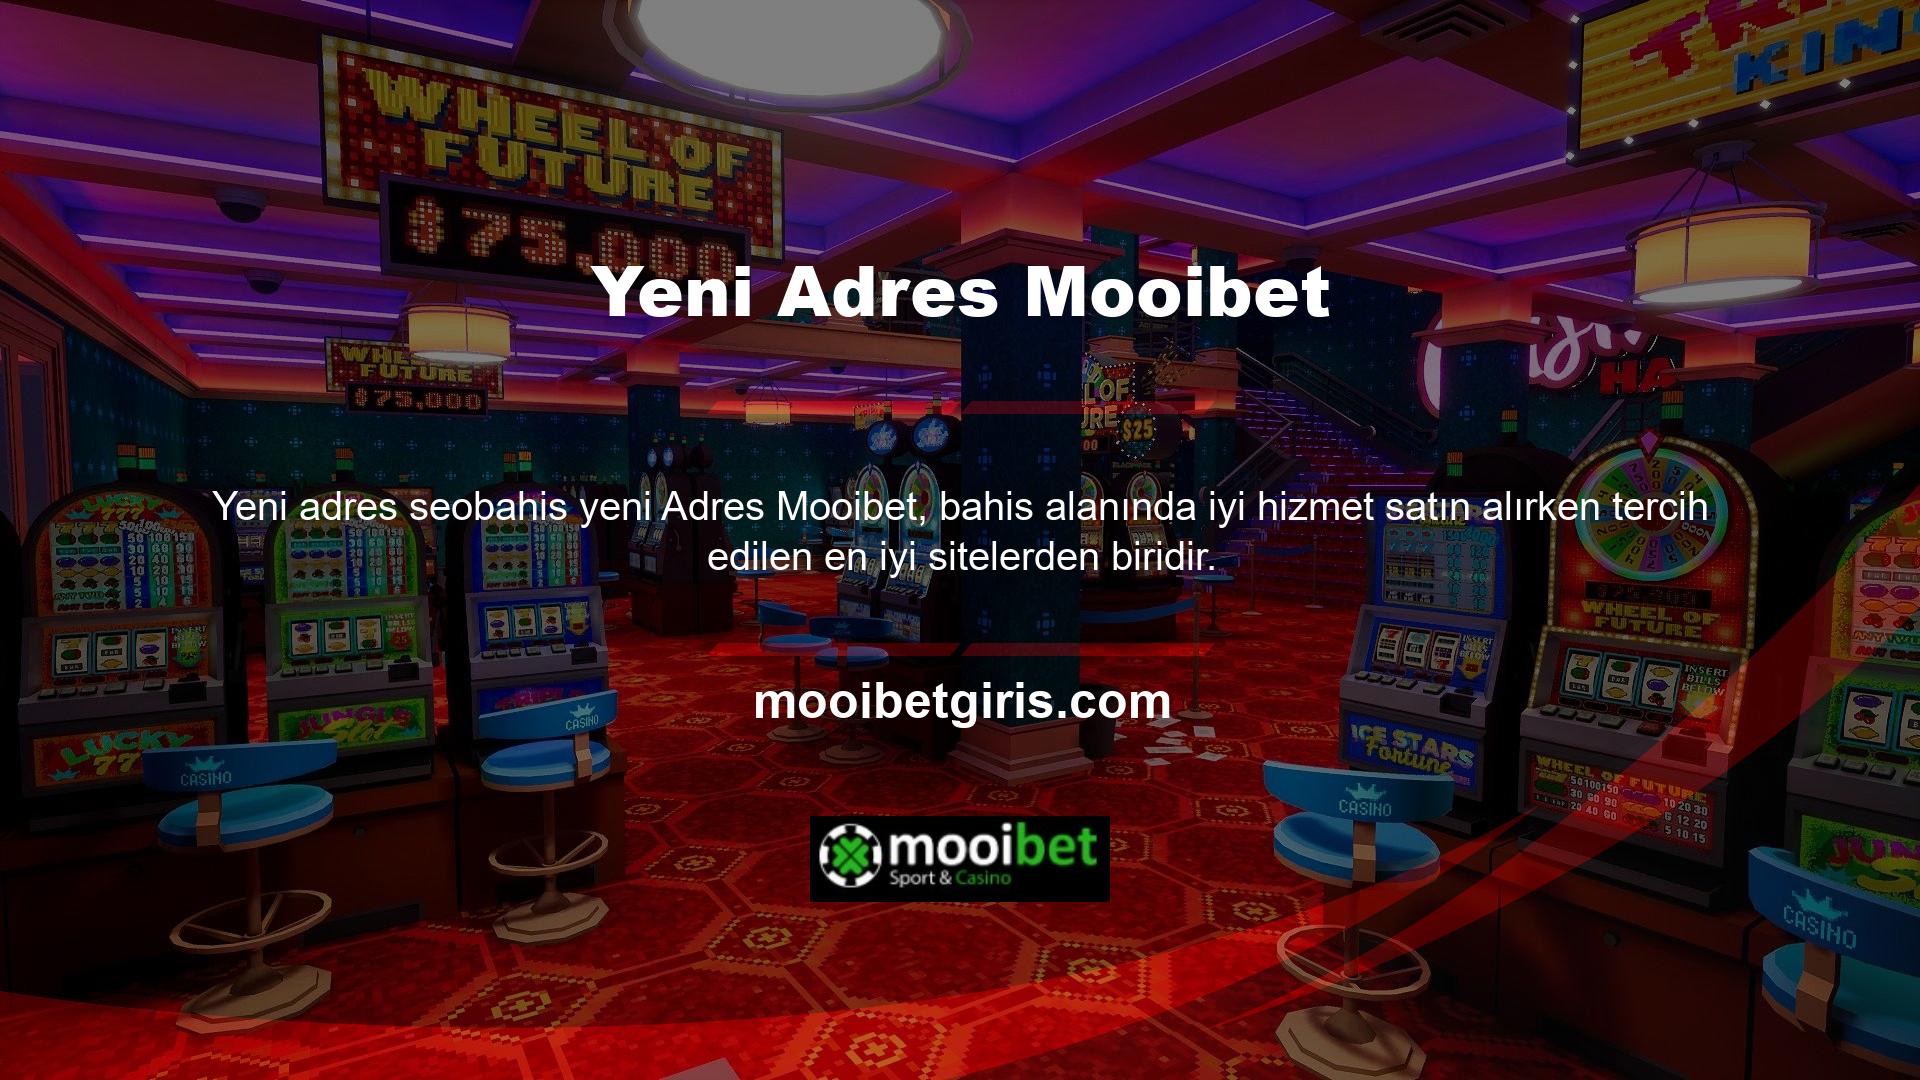 Her açıdan oldukça kazançlı bir platform olması Mooibet sitesini dijital alanda bir numaralı site haline getirmektedir